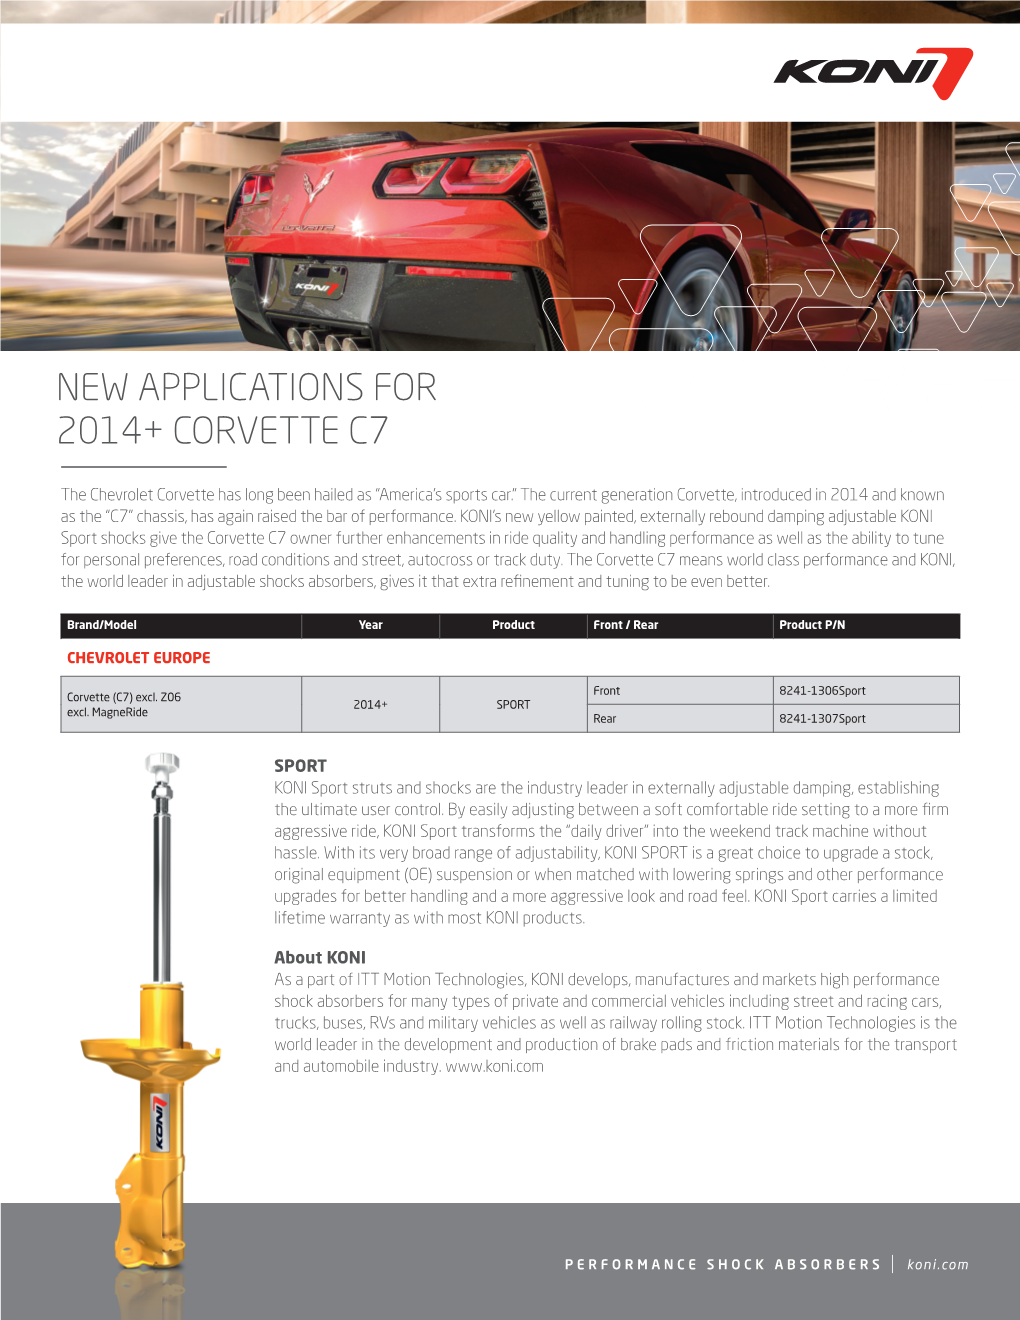 New Applications for 2014+ Corvette C7